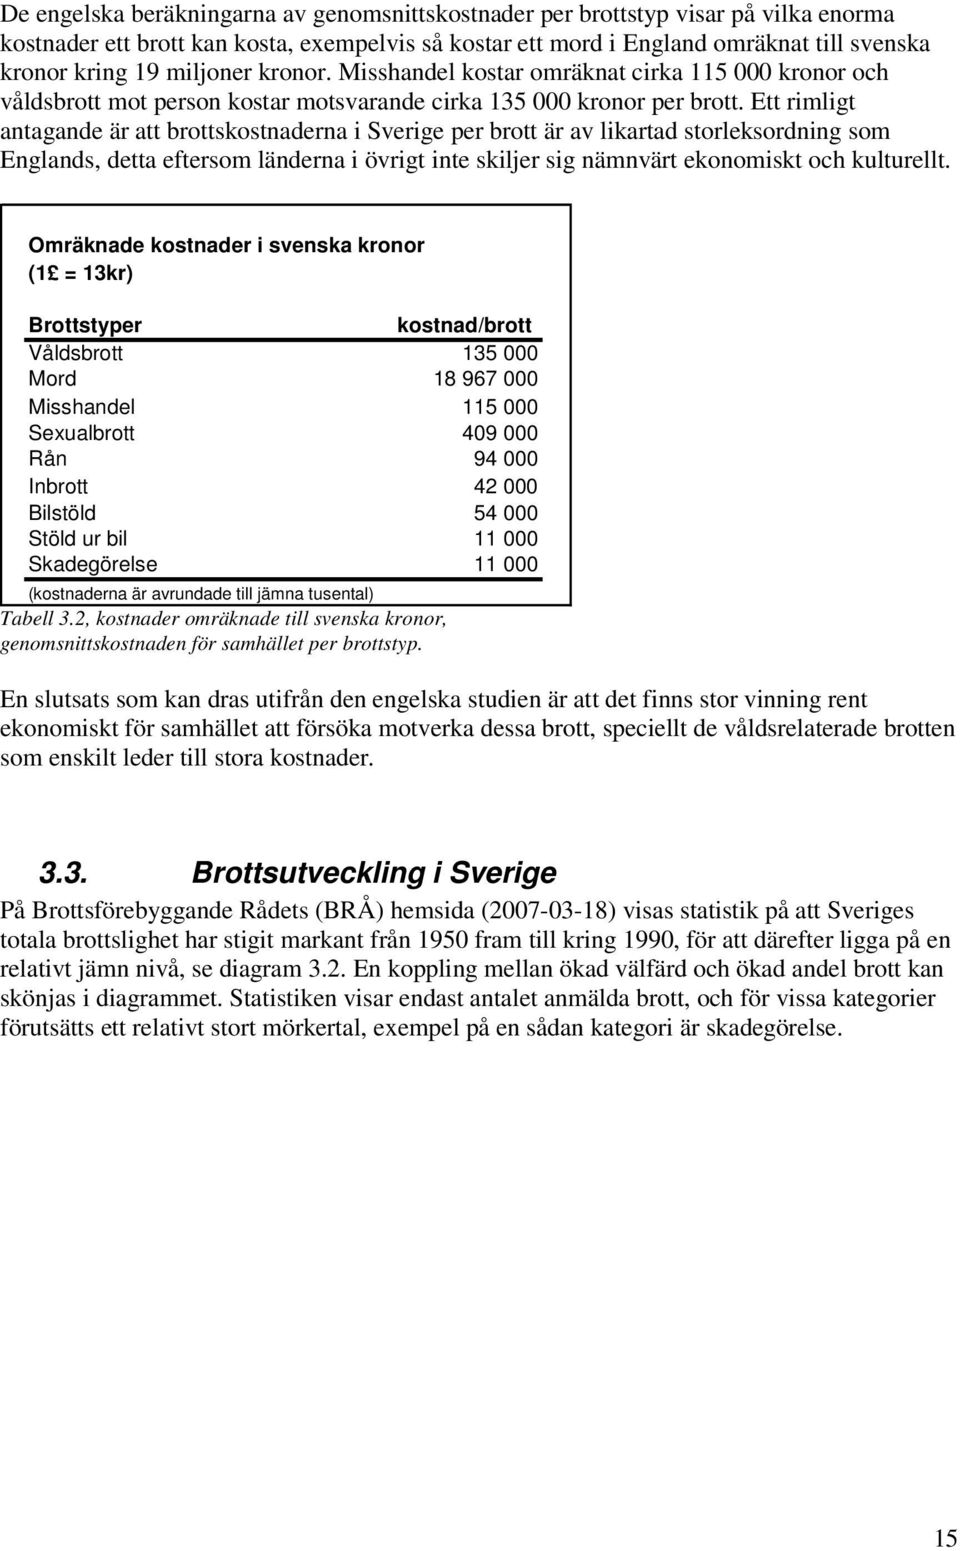 Ett rimligt antagande är att brottskostnaderna i Sverige per brott är av likartad storleksordning som Englands, detta eftersom länderna i övrigt inte skiljer sig nämnvärt ekonomiskt och kulturellt.